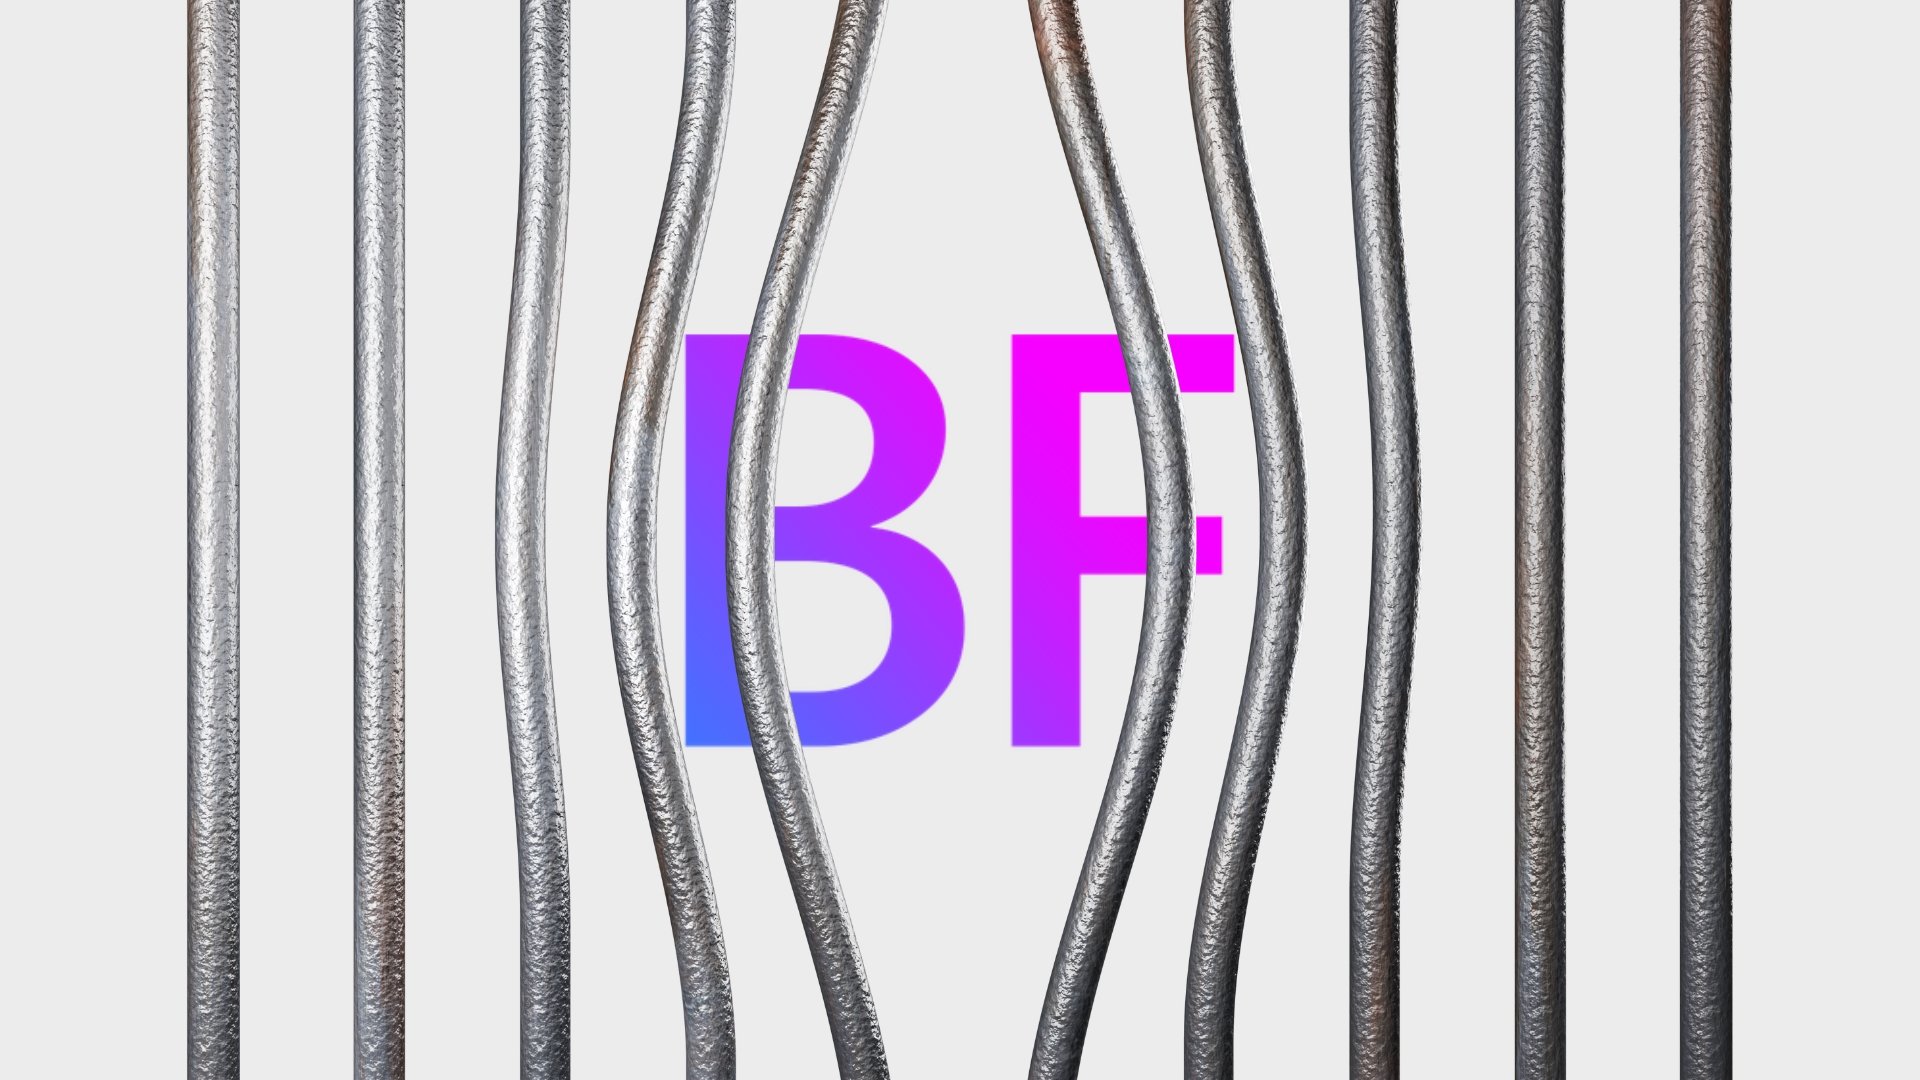 Logo do BreachForums sobre barras de metal de prisão